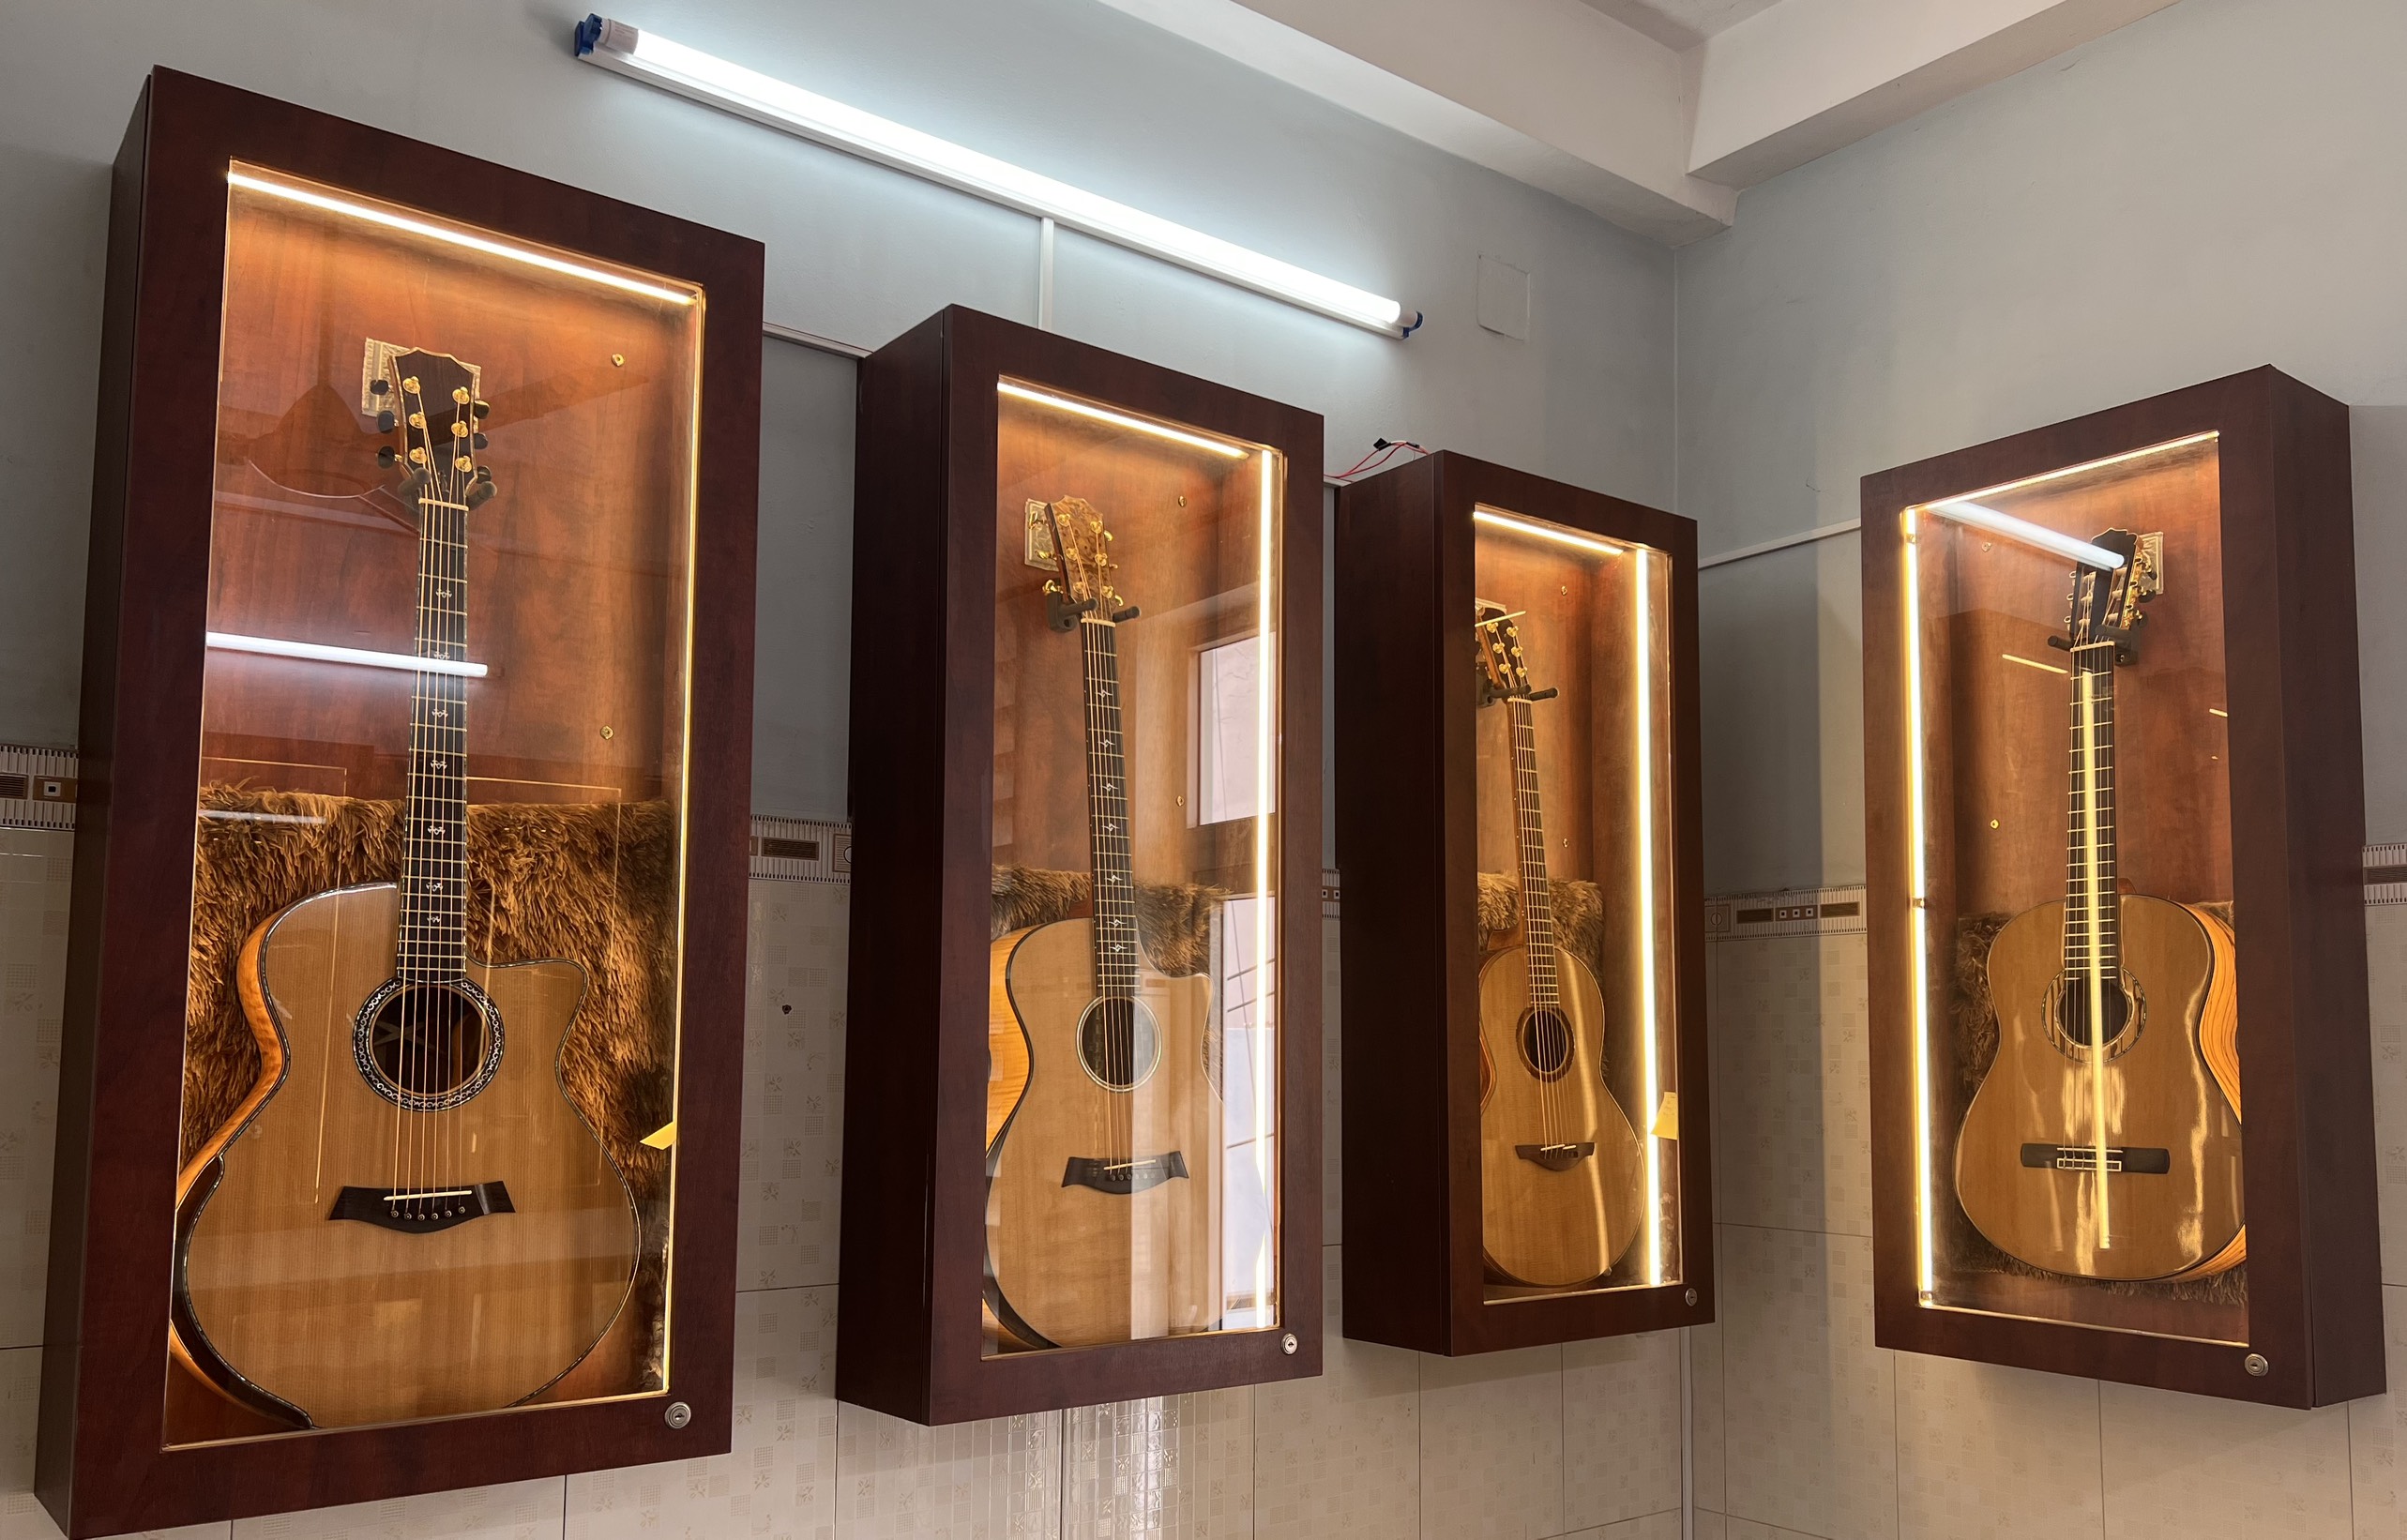 Gặp gỡ người sáng lập thương hiệu Guitar Custom nổi tiếng tại Việt Nam - CEO Trần Quang Vũ - 3